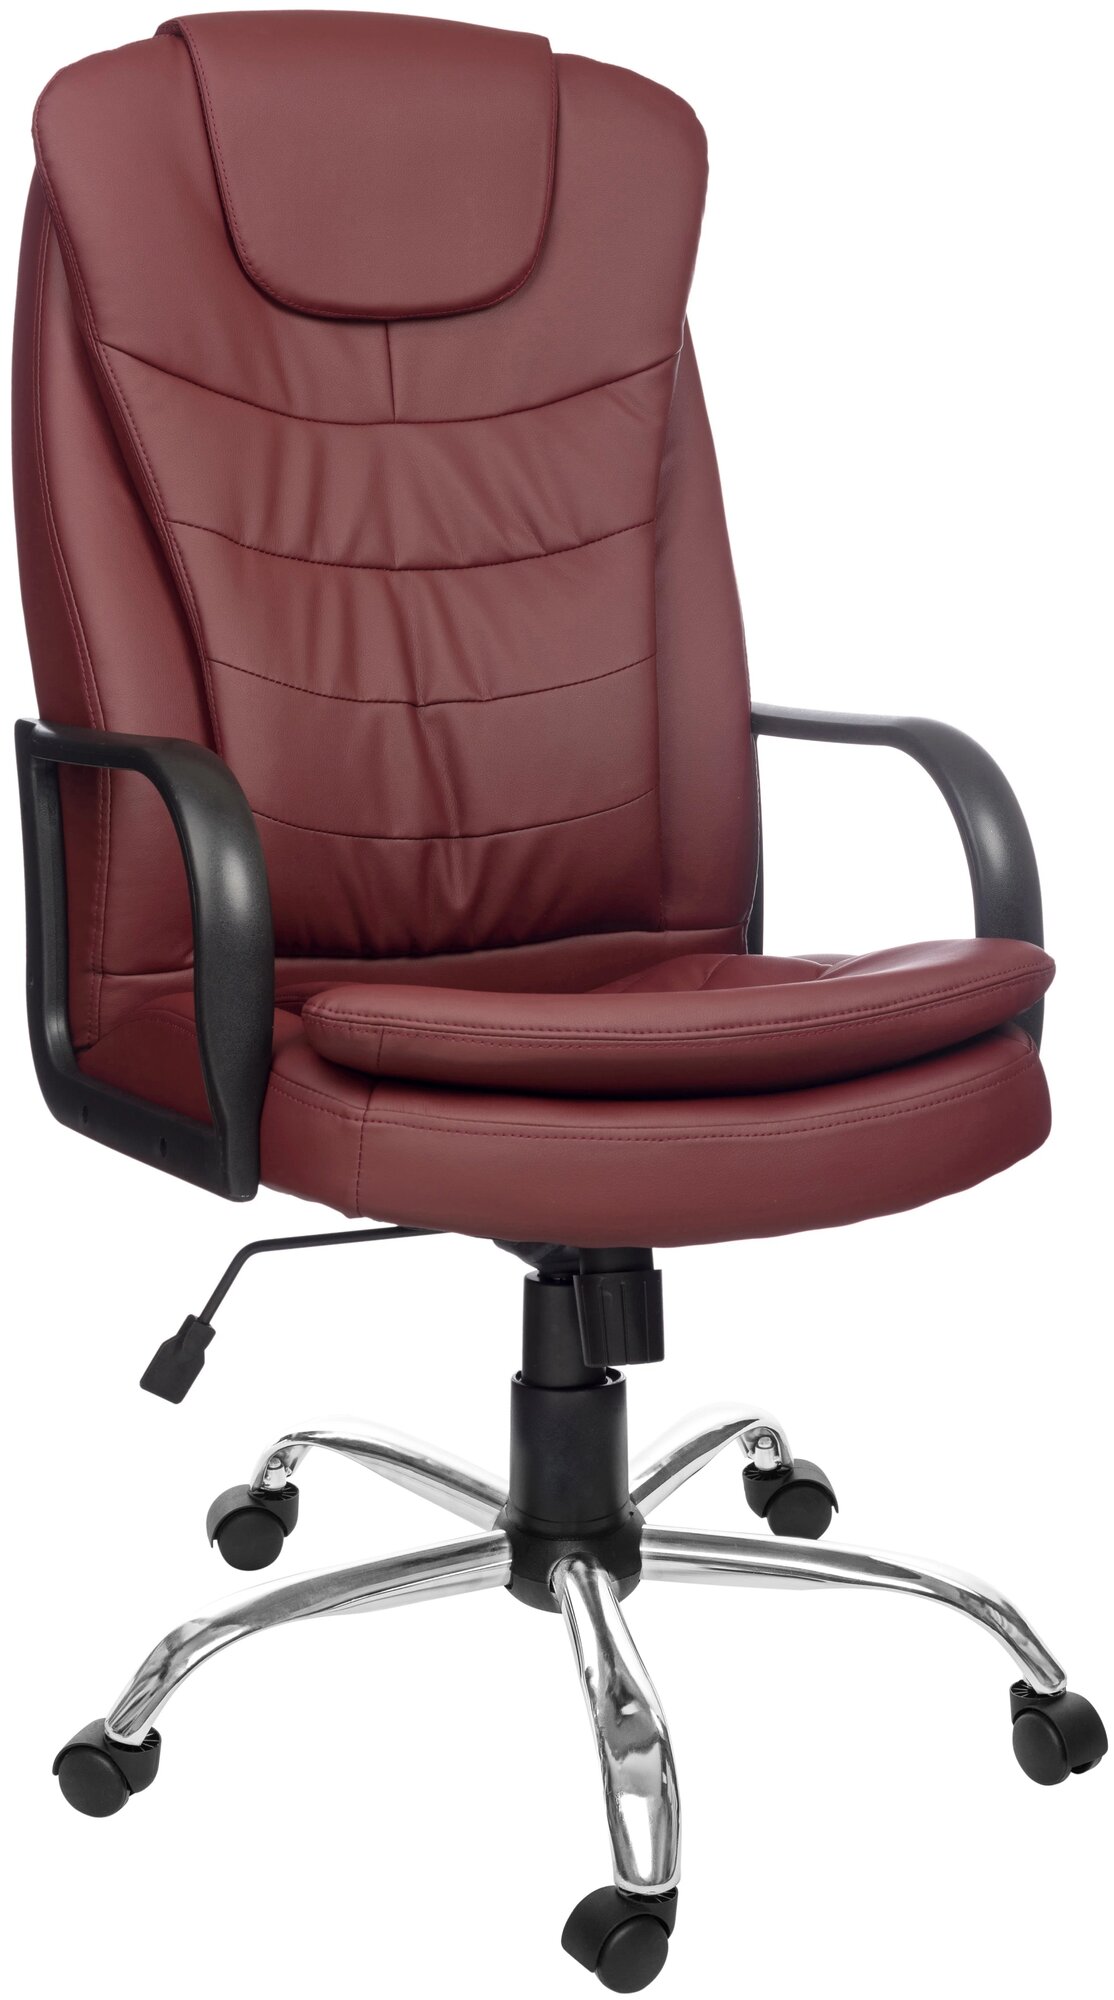 Компьютерное кресло Роскресла Patrick M (Хром) офисное, обивка: экокожа, цвет: бордовый